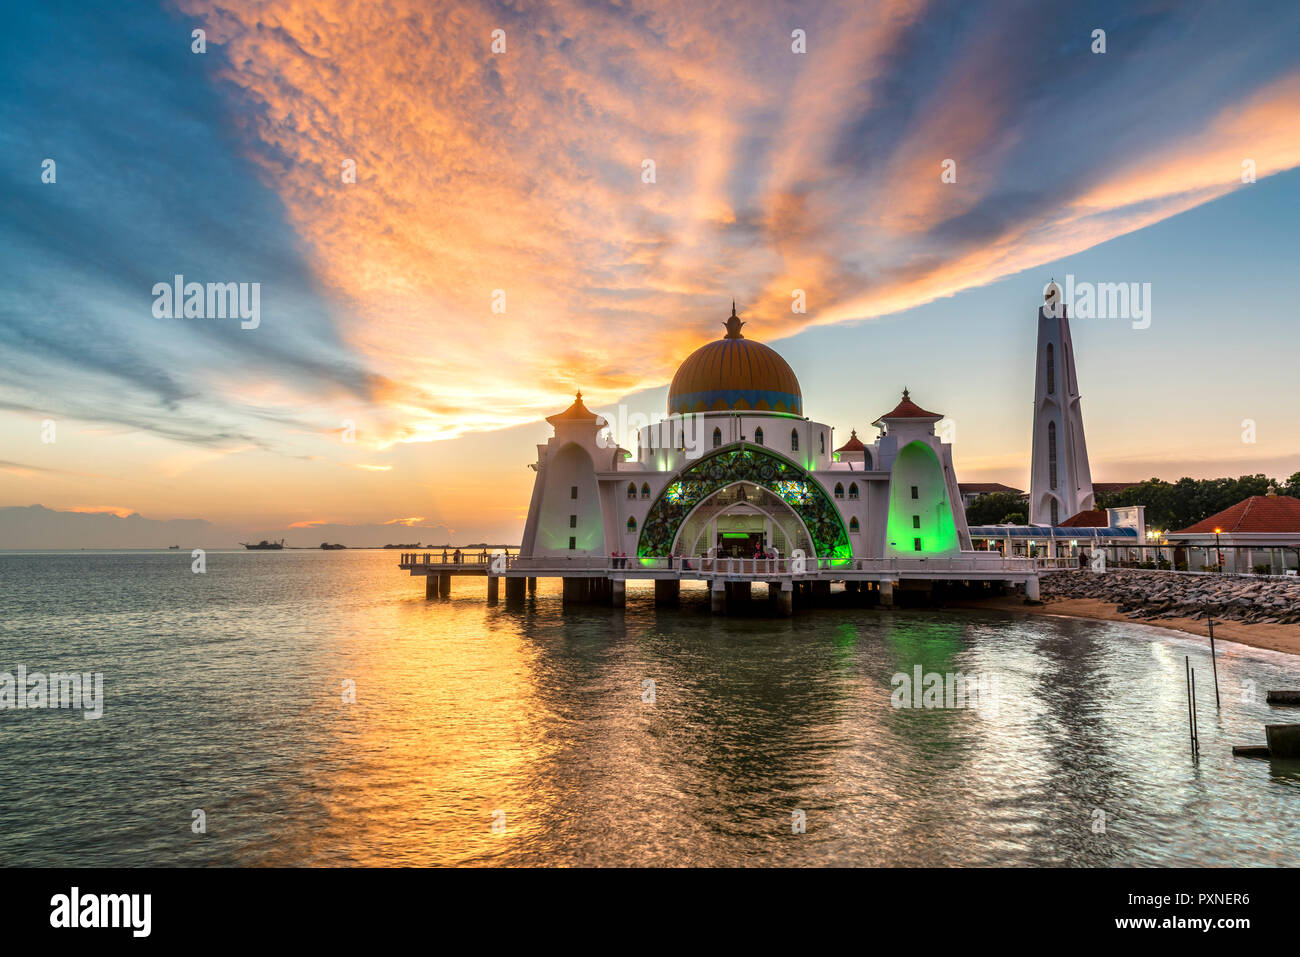 Melaka Straits Mosque, Malacca City, Malaysia Stock Photo